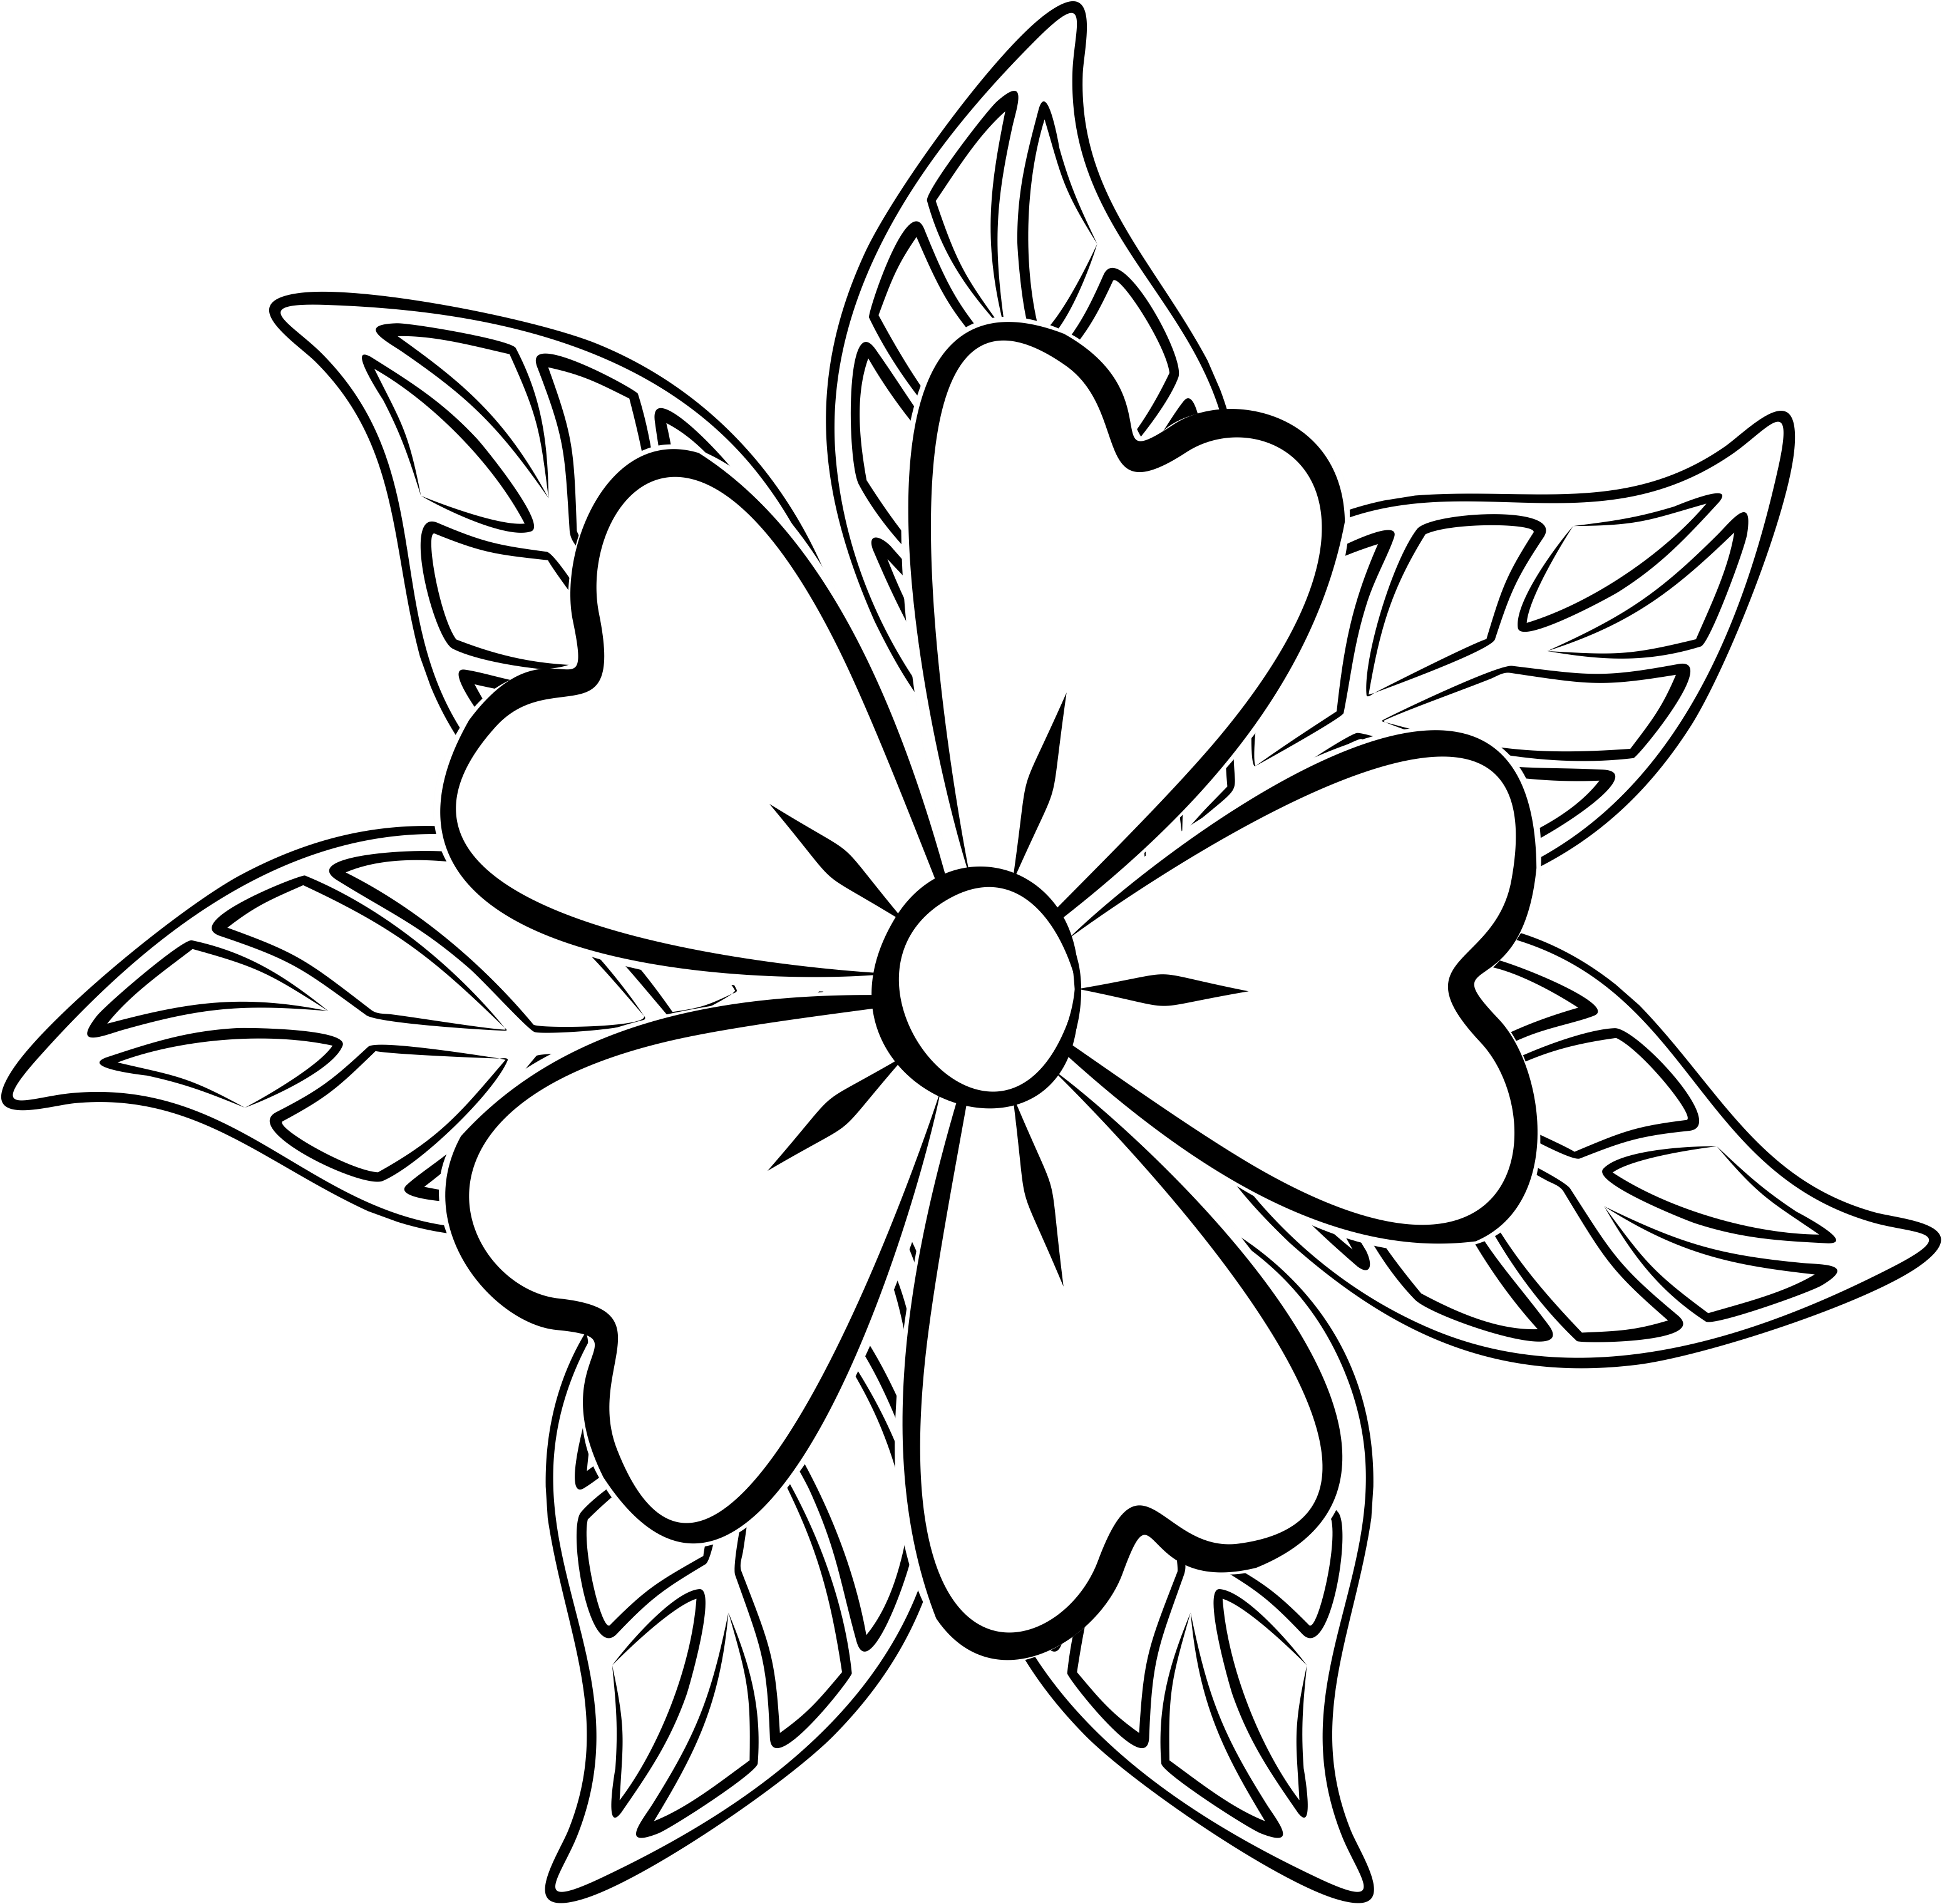 Desenho de Uma pequena flor para colorir , imprimir o baixar. Pinta on-line  com um jogo de colorir desenh…